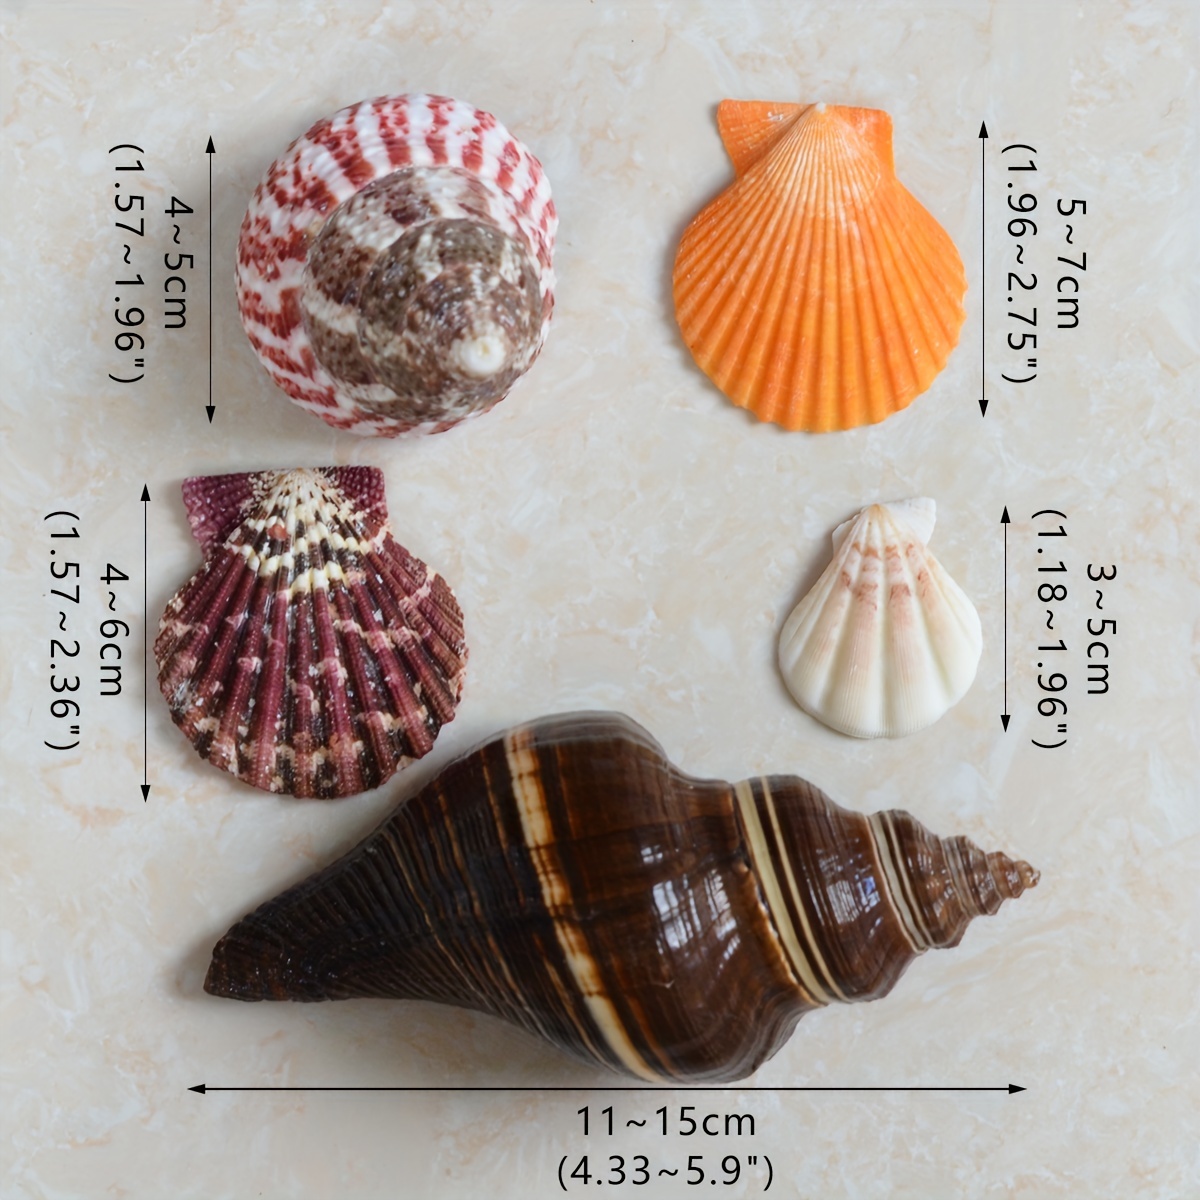 Mixed Sea Shells Natural Conch Fish Aquarium Ornament DIY Home Landscape  Decor